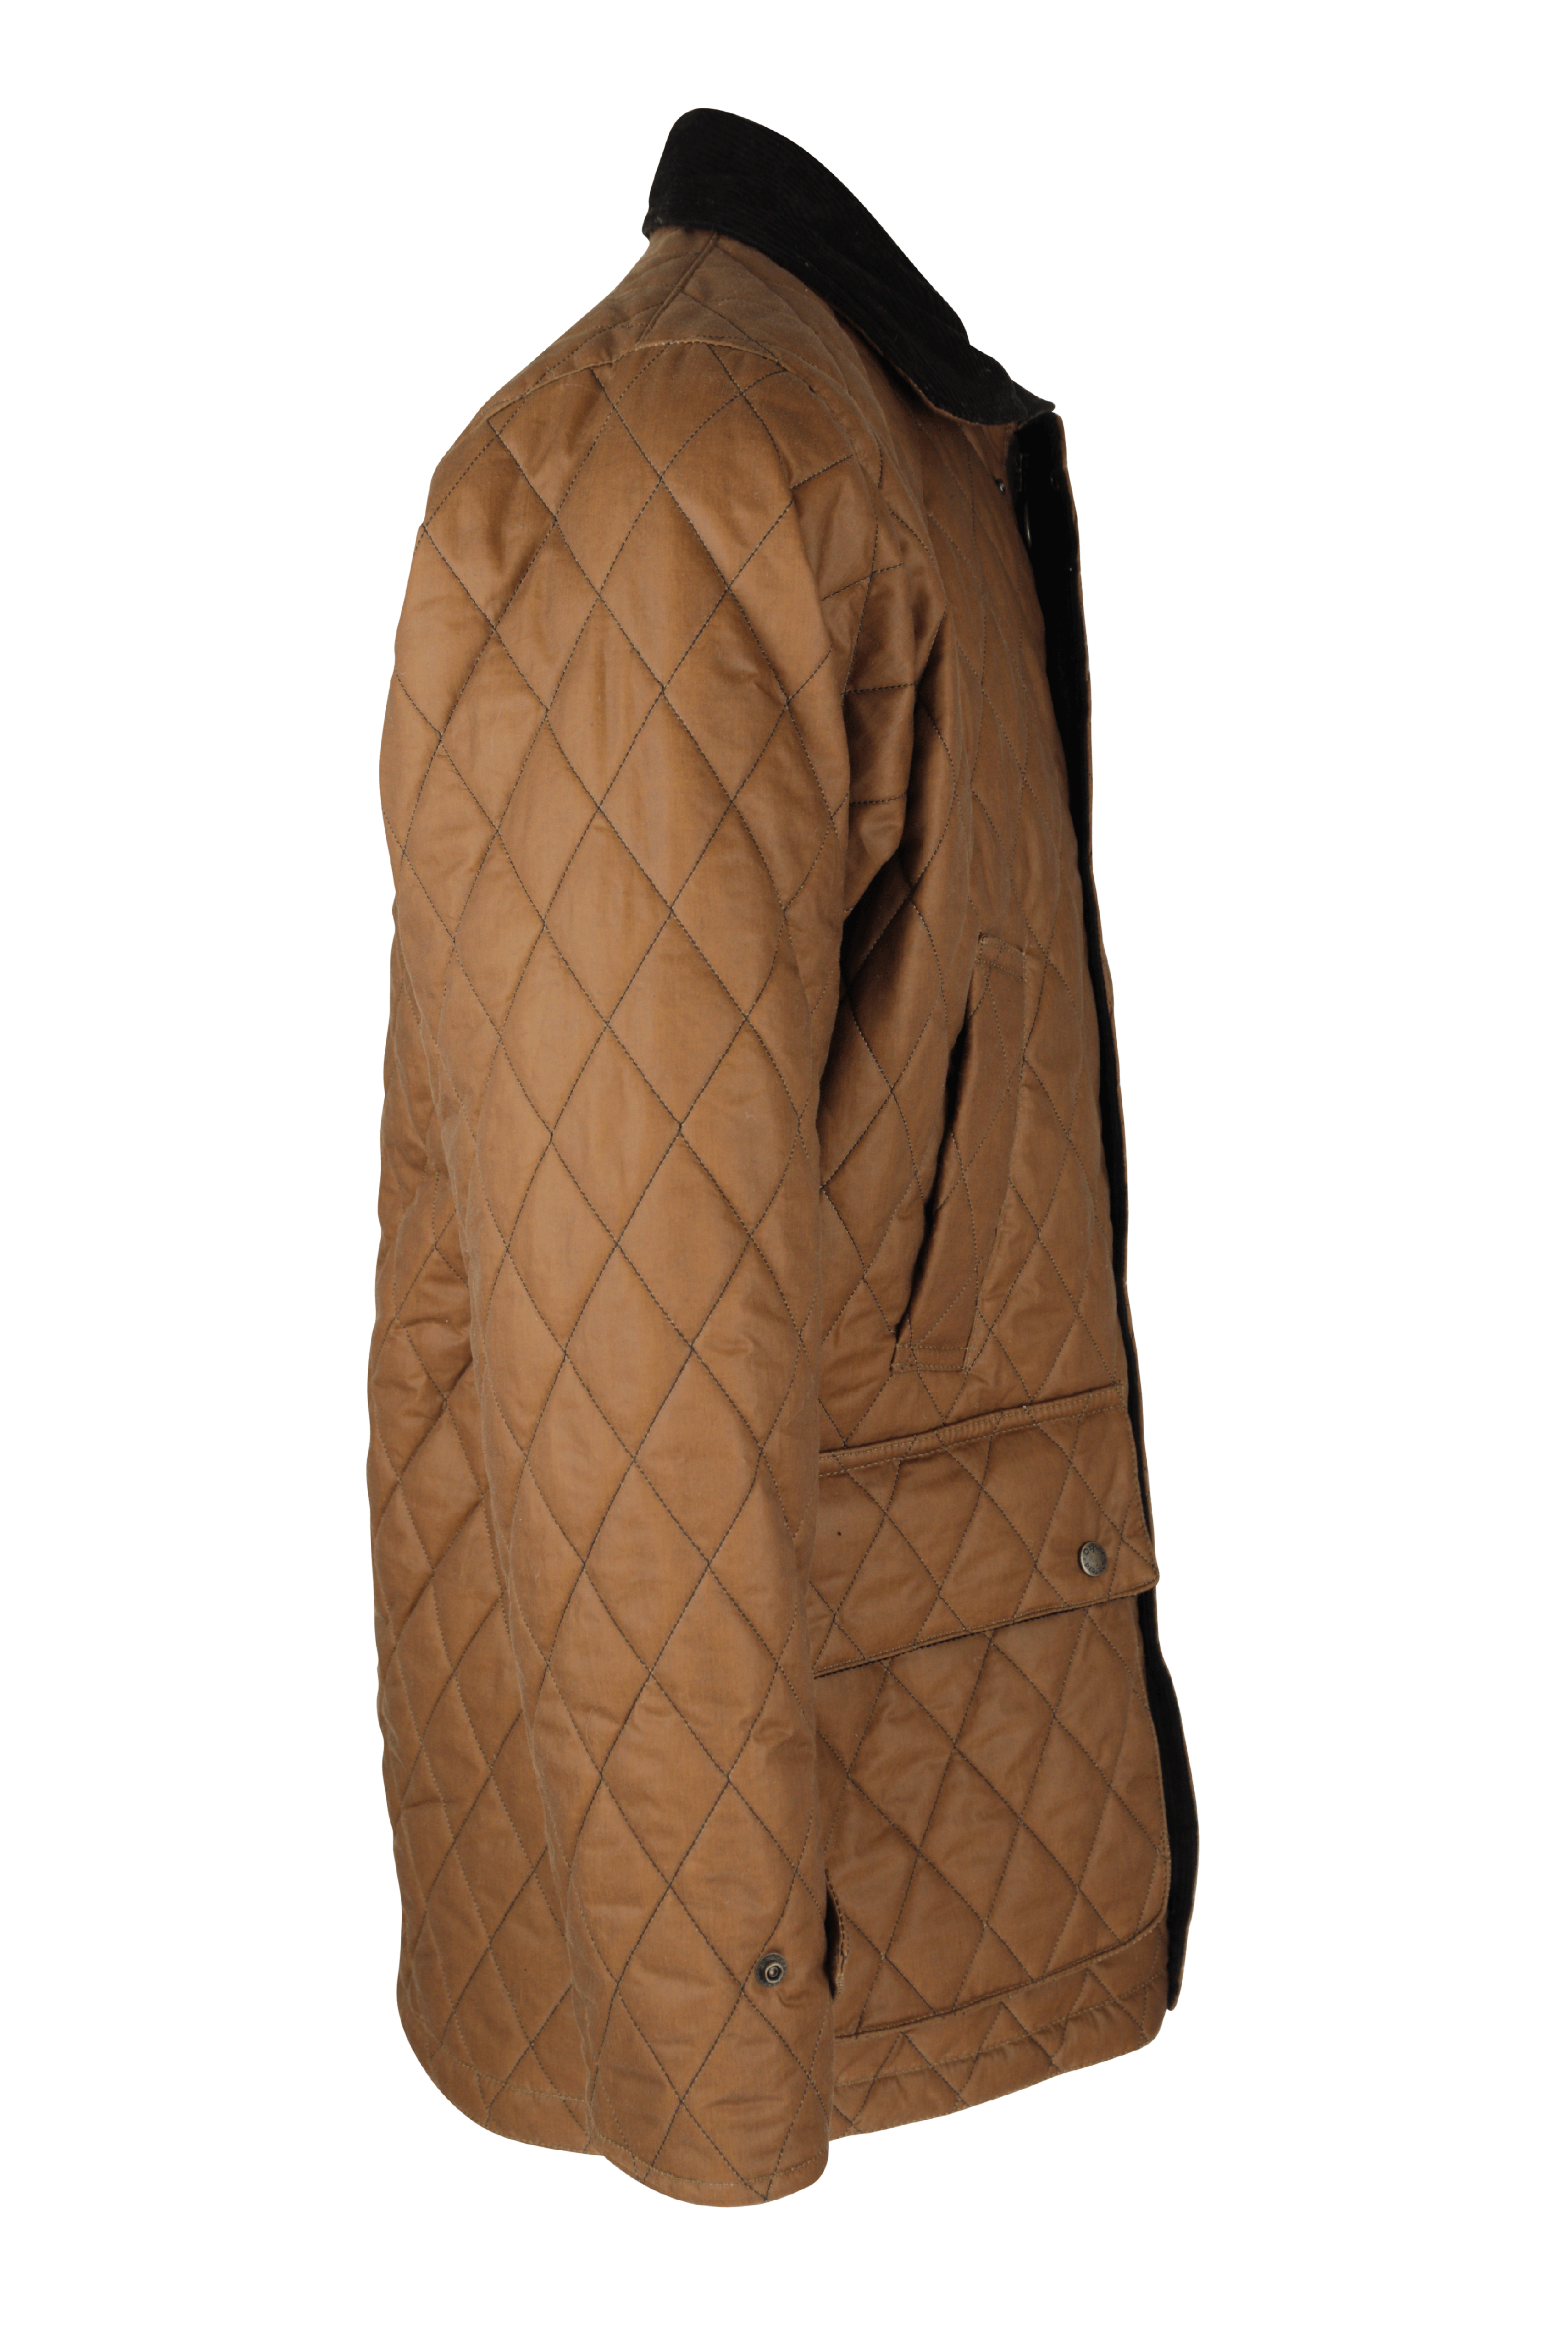 W27 - Men's Aarhus Quilted Wax Coat - SAND